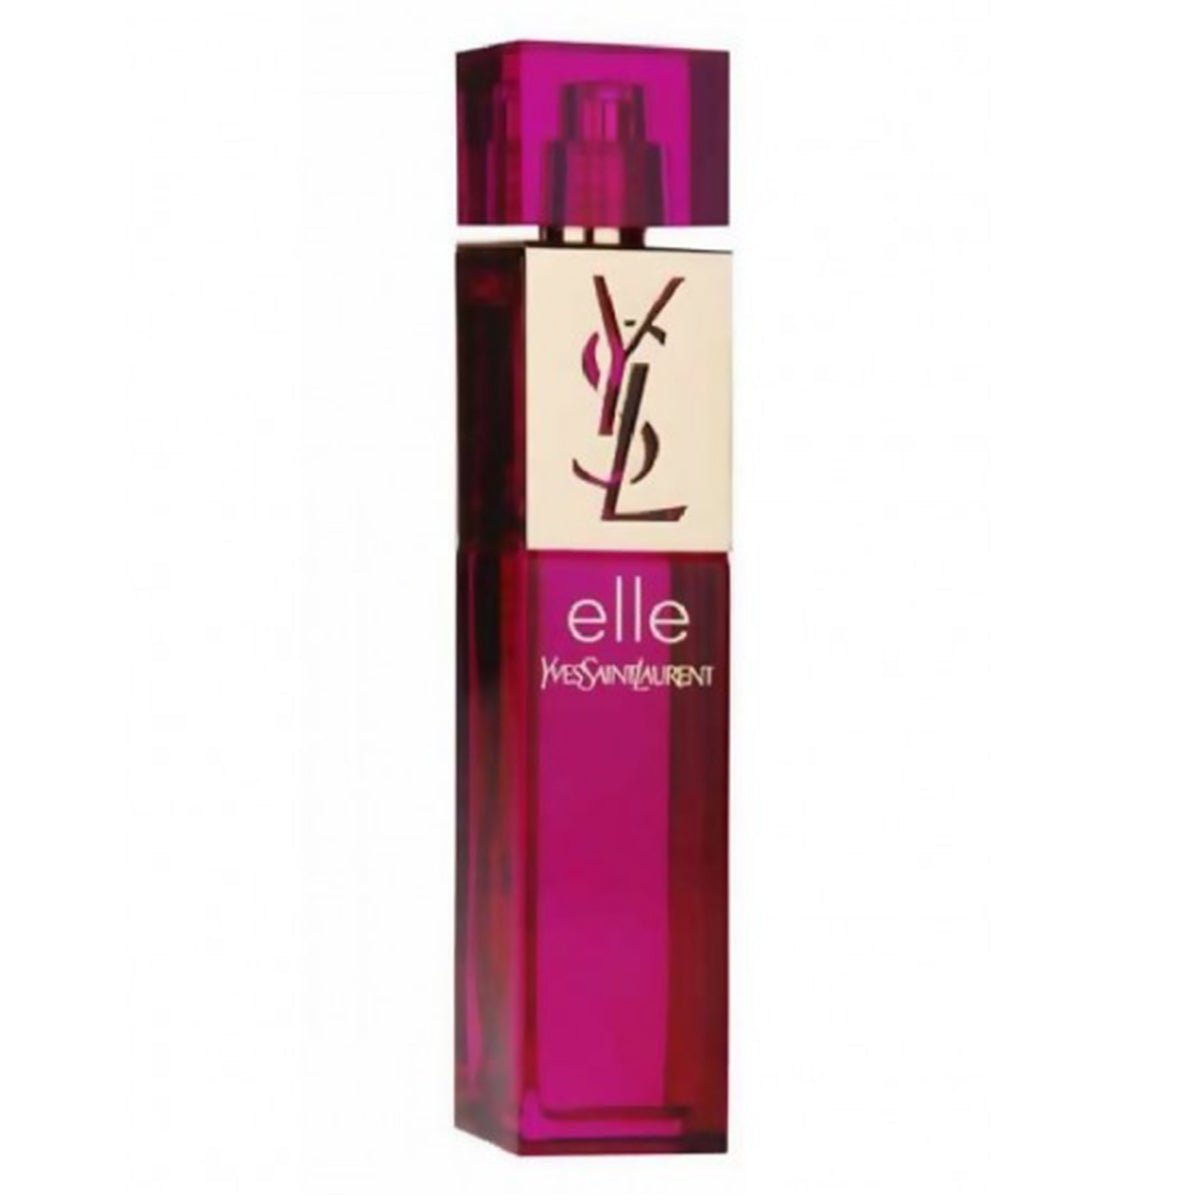 Yves Saint laurent Ysl Elle Edp For Women 90ml-Perfume - AllurebeautypkYves Saint laurent Ysl Elle Edp For Women 90ml-Perfume